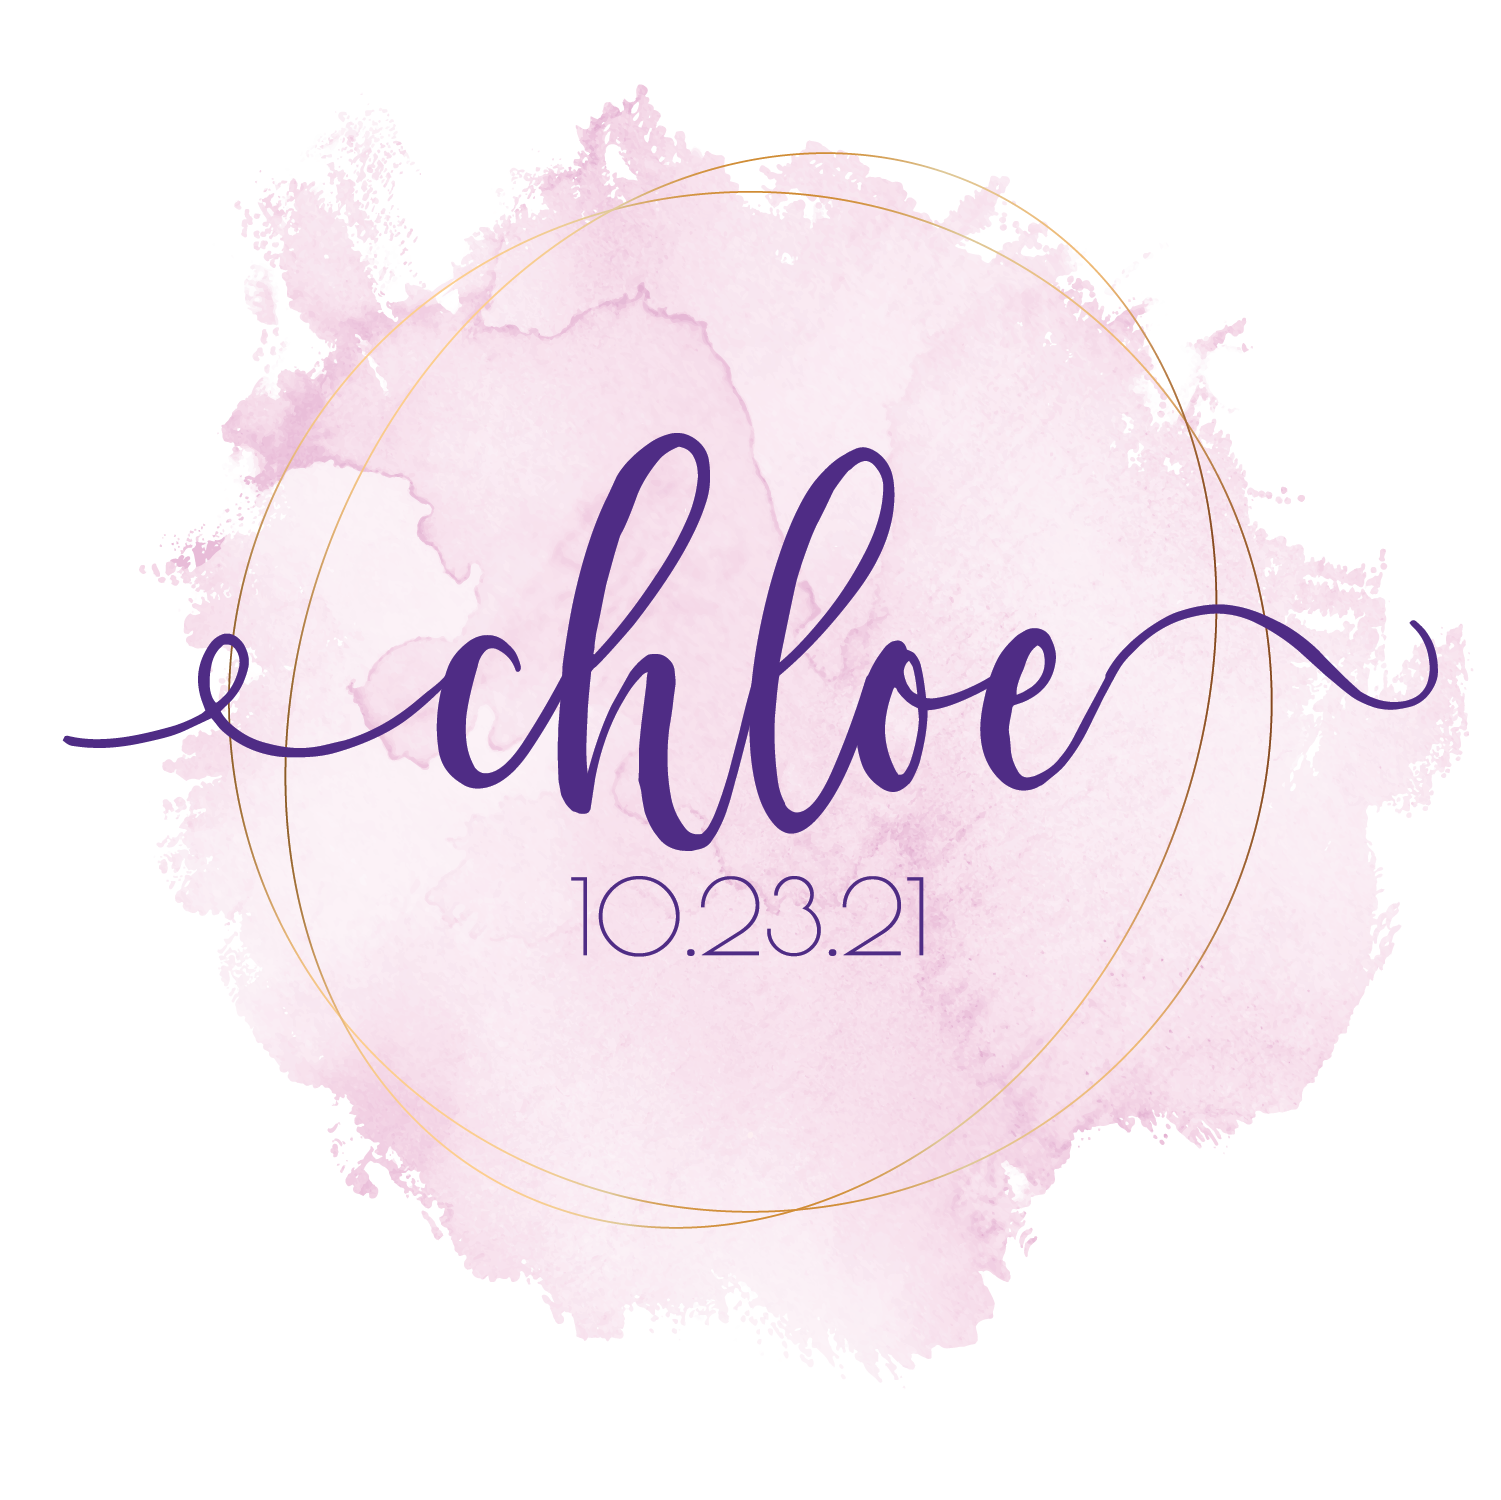 Chloe Name Logo - Name Logos